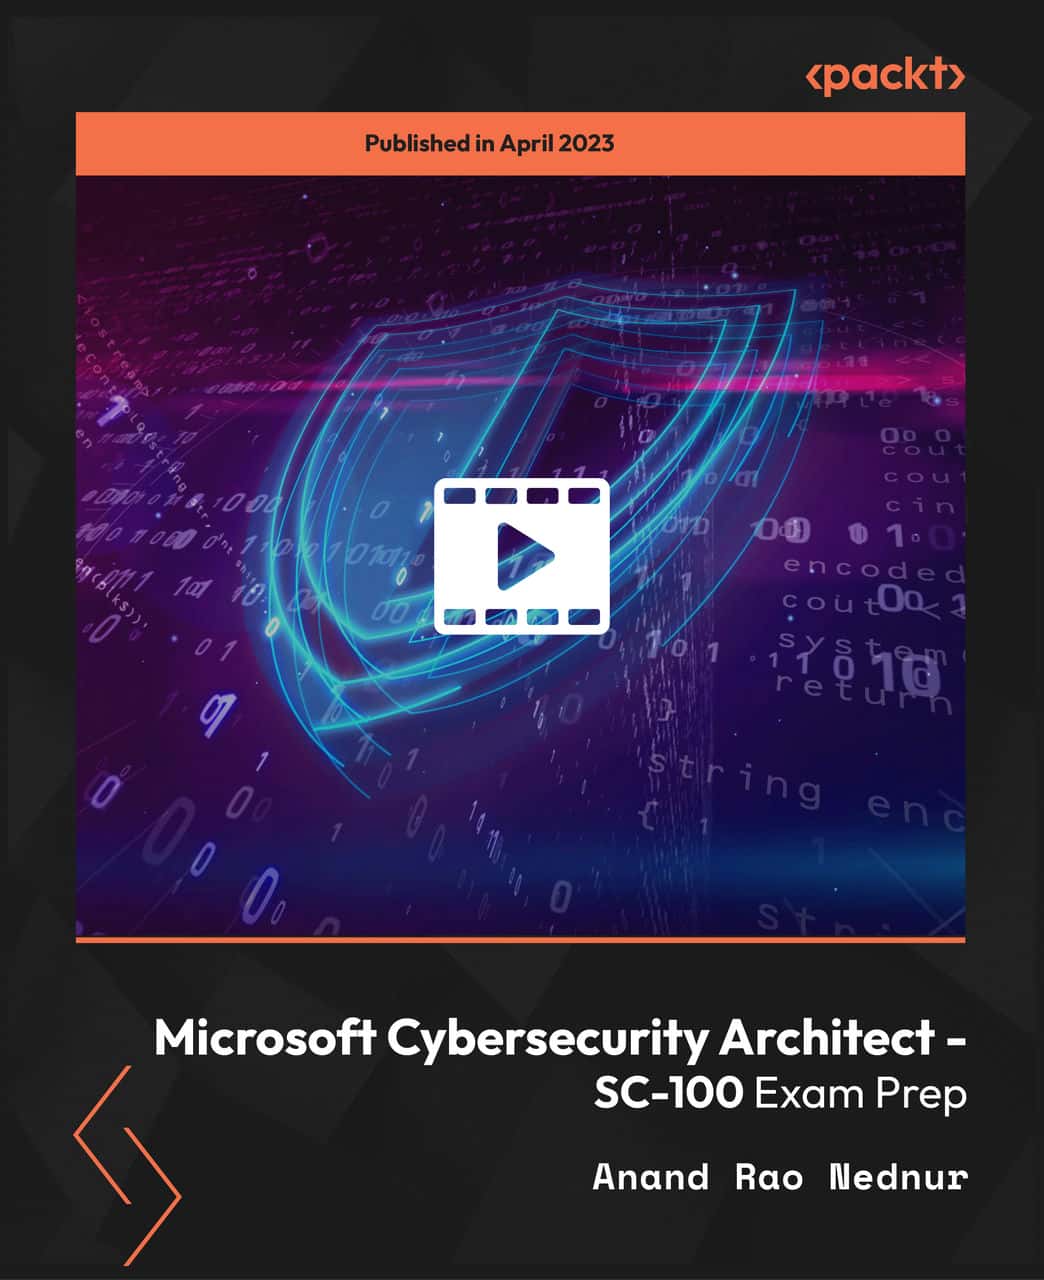 آموزش Microsoft Cybersecurity Architect - آمادگی آزمون SC-100 [ویدئو]